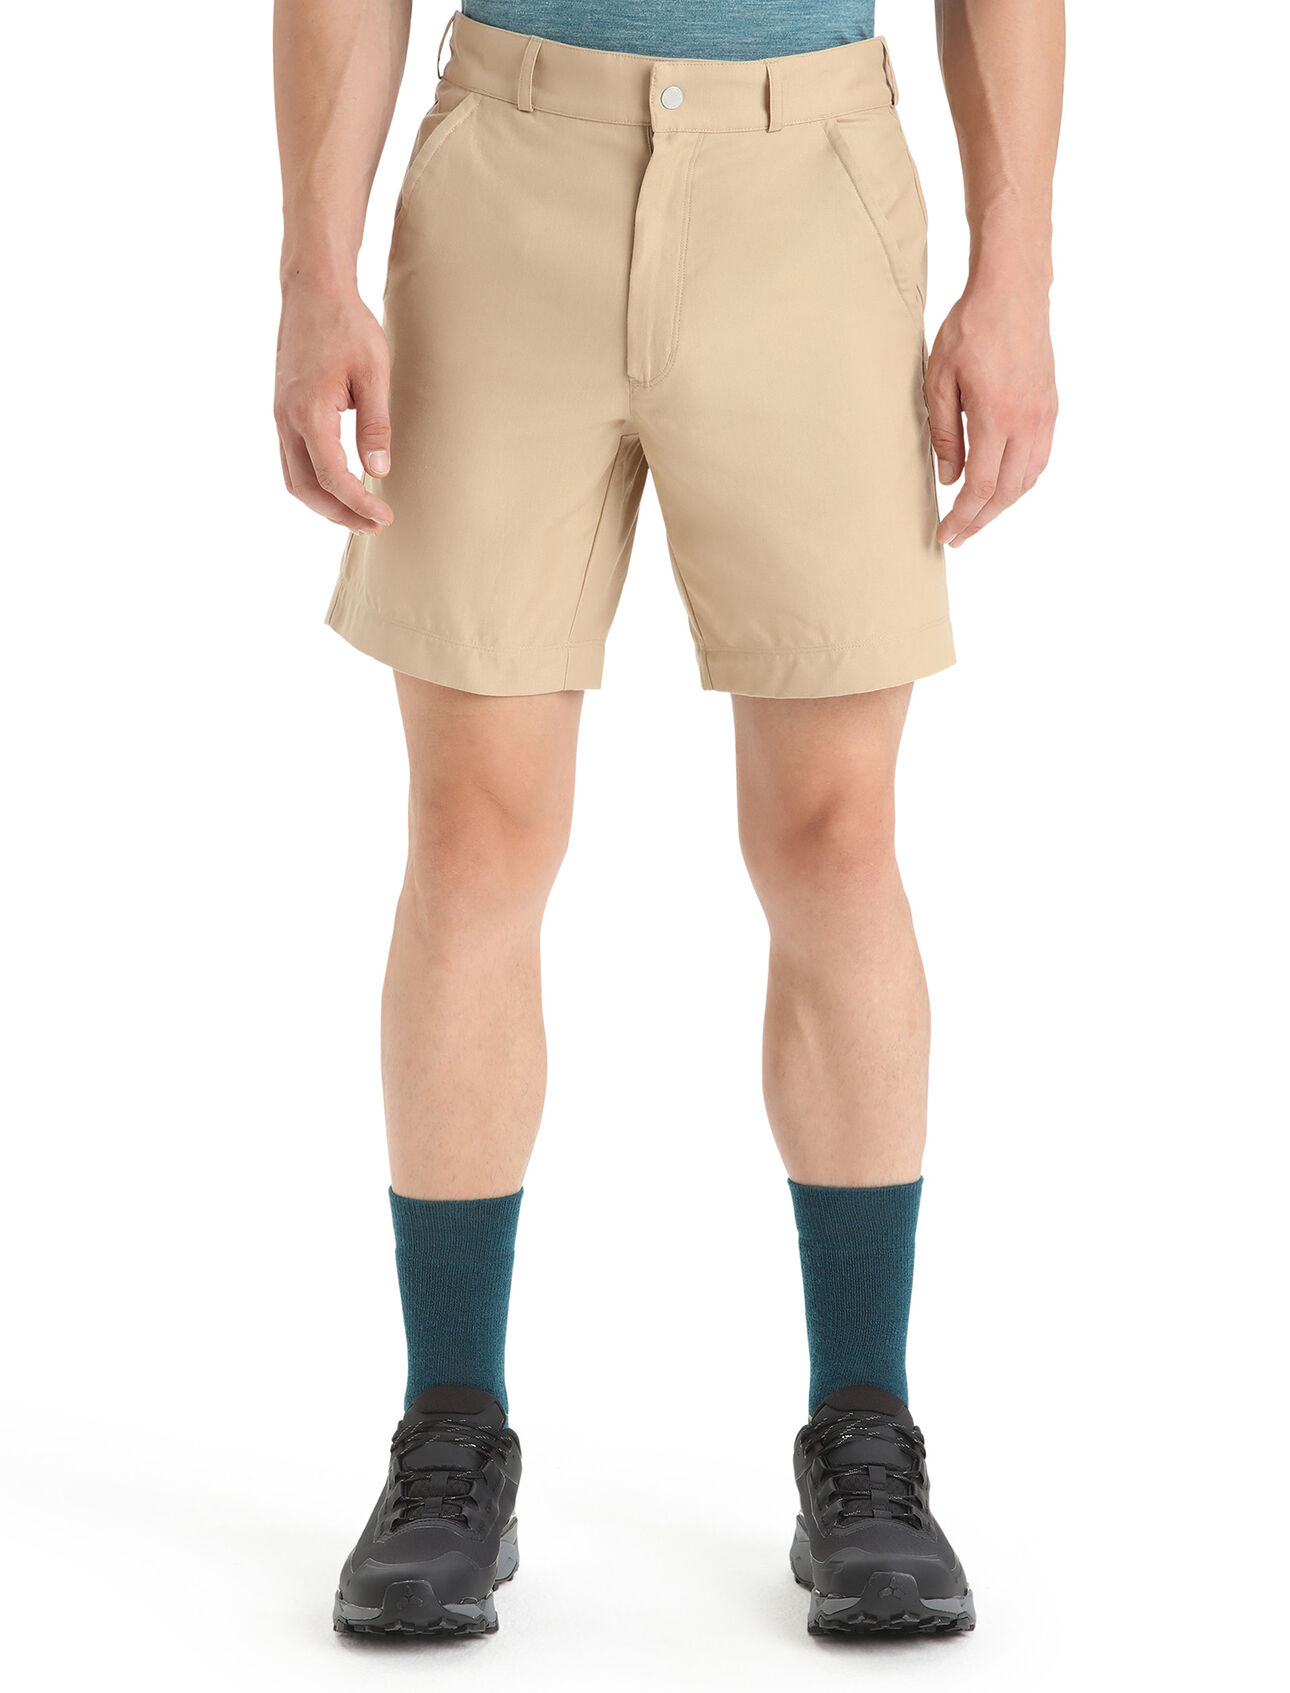 Herr Hike shorts i merino Hike shorts är ett par slitstarka och pålitliga fjällshorts som är tillverkad i en unik blandning av Merinoull och ekologisk bomull. Det gör att de passar utmärkt för alla slags fjälläventyr.